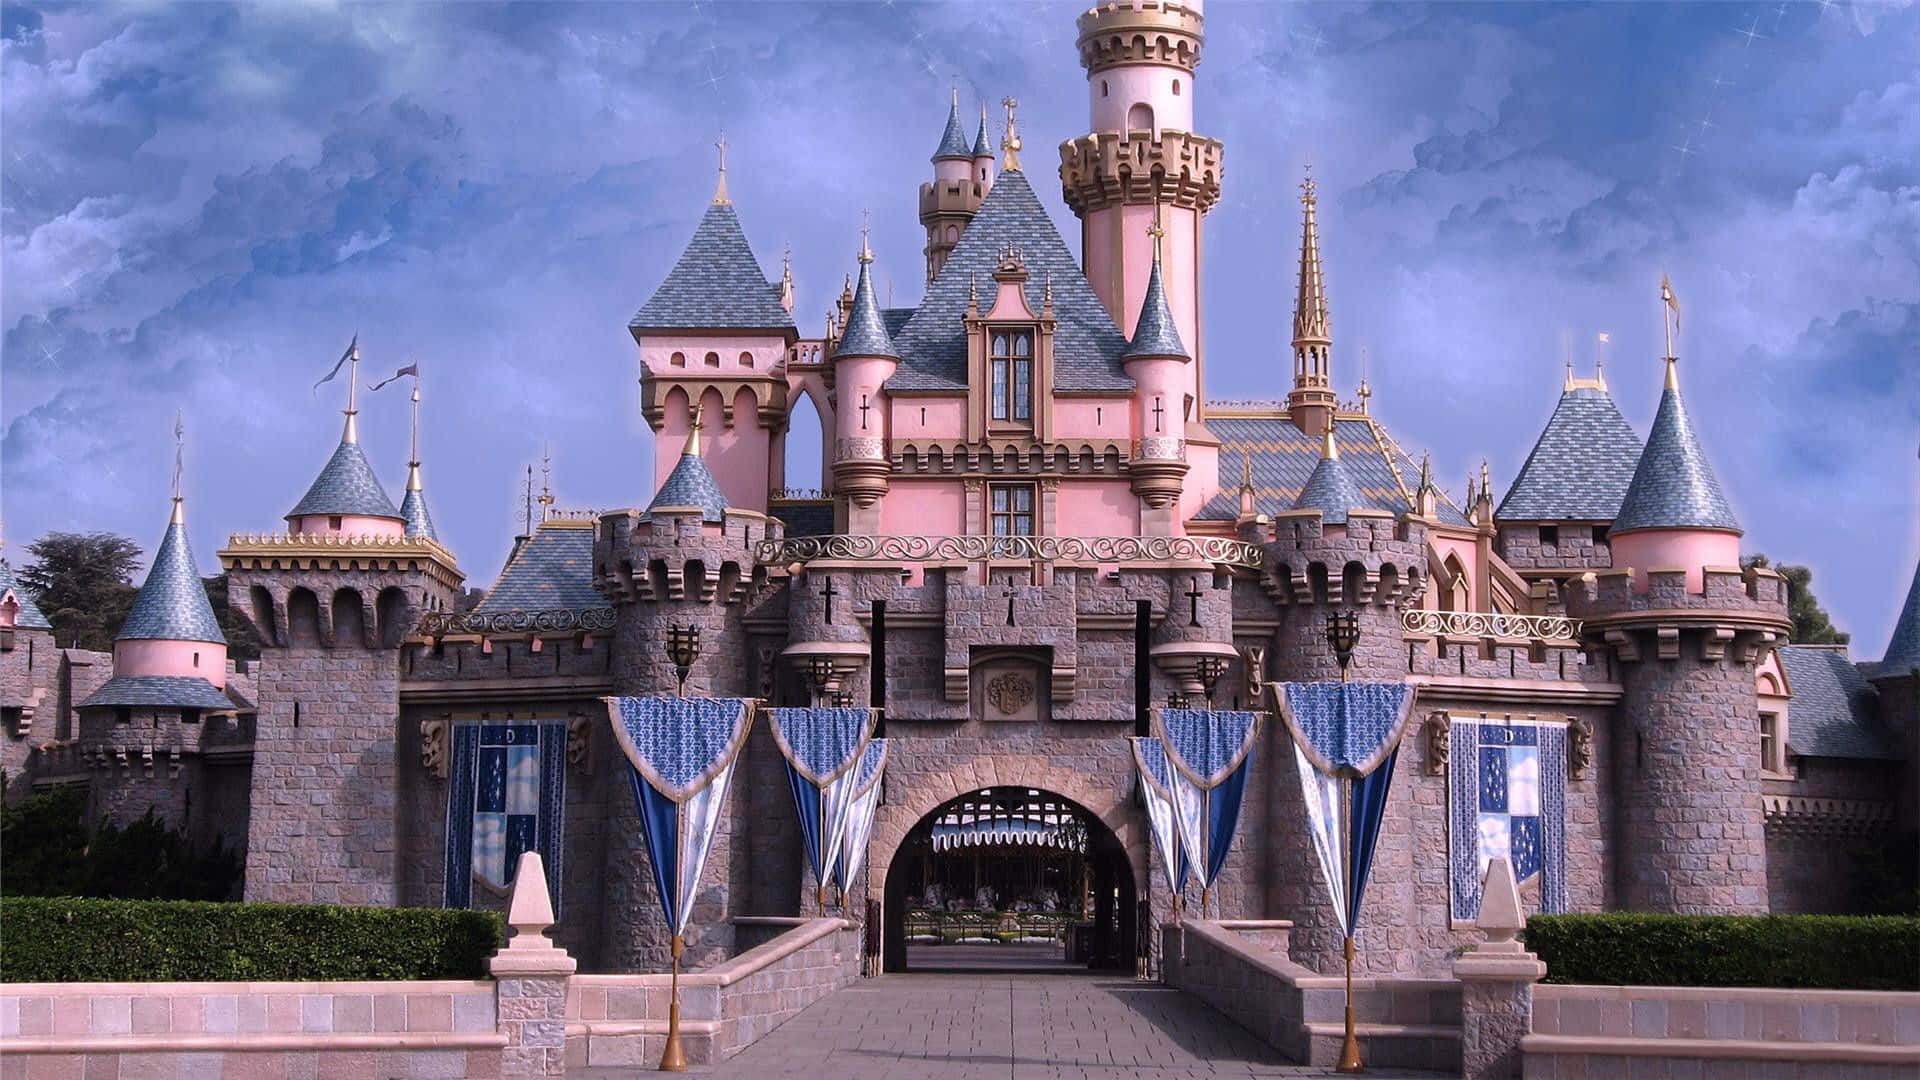 Ilsimbolo Iconico Del Castello Disney In Tutta La Sua Splendida Magnificenza